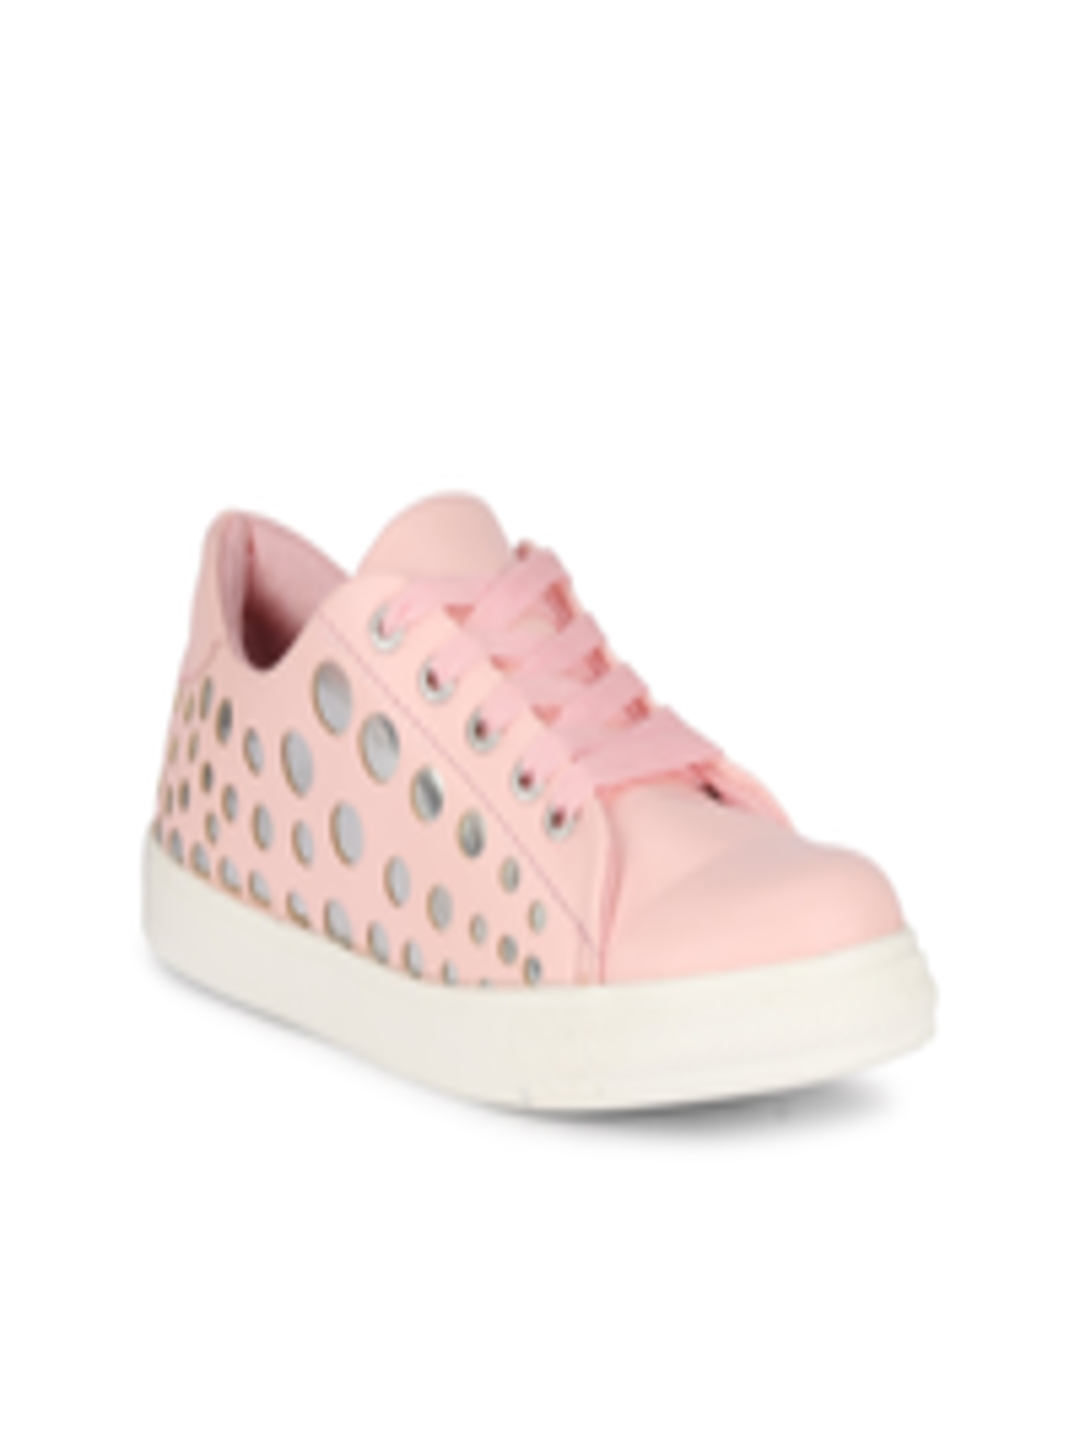 Buy MOZAFIA Women Pink Printed PU Sneakers - Casual Shoes for Women ...